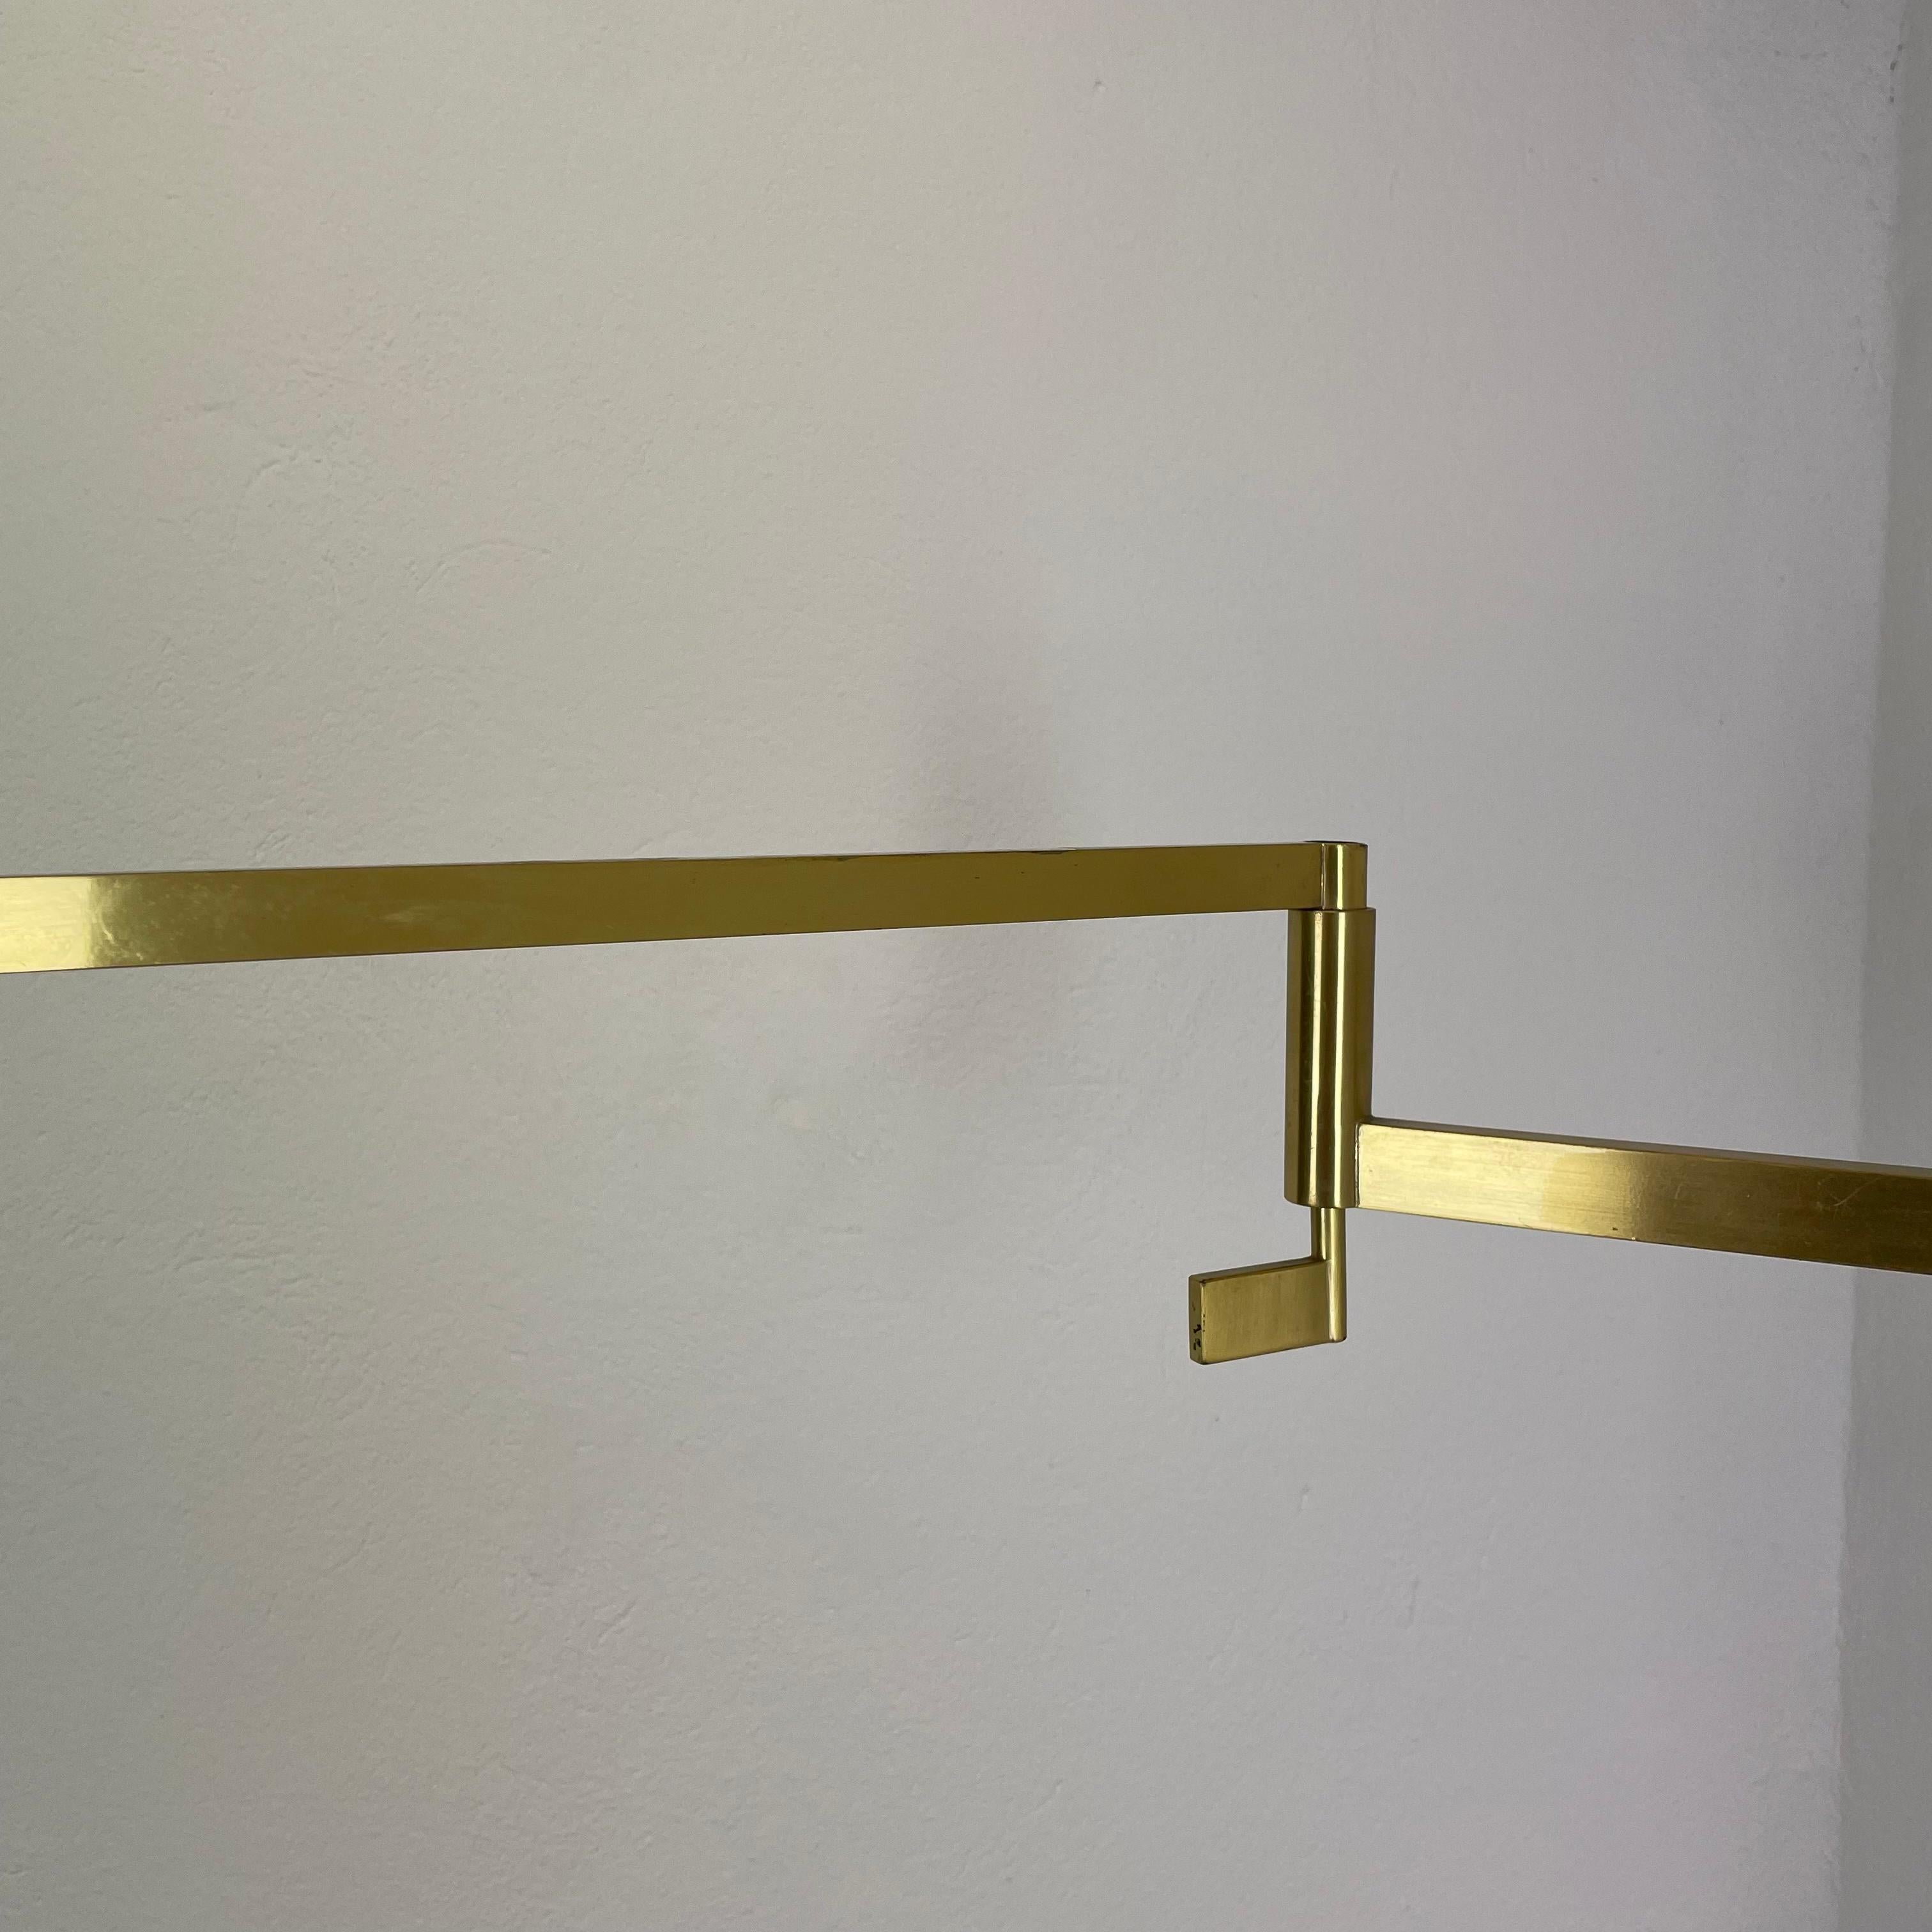 Xxl Minimalist Stilnovo Style Swing Arm Brass Wall Light Italy, 1960s For Sale 10